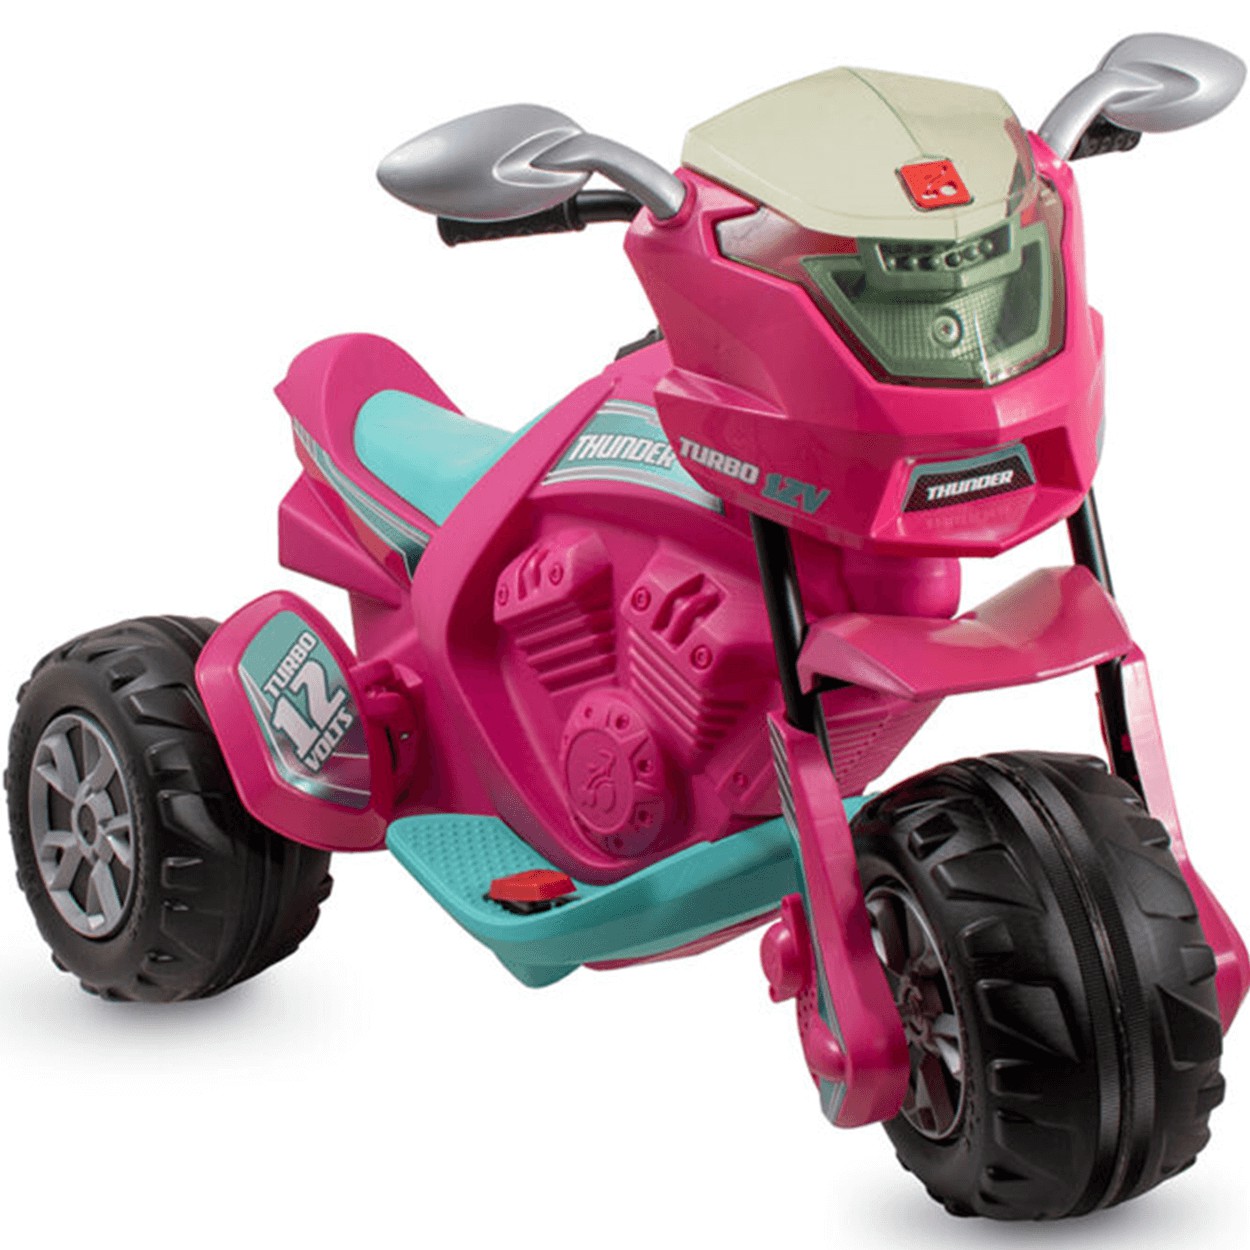 Nova moto elétrica para crianças tem marcha ré e desempenho ajustável